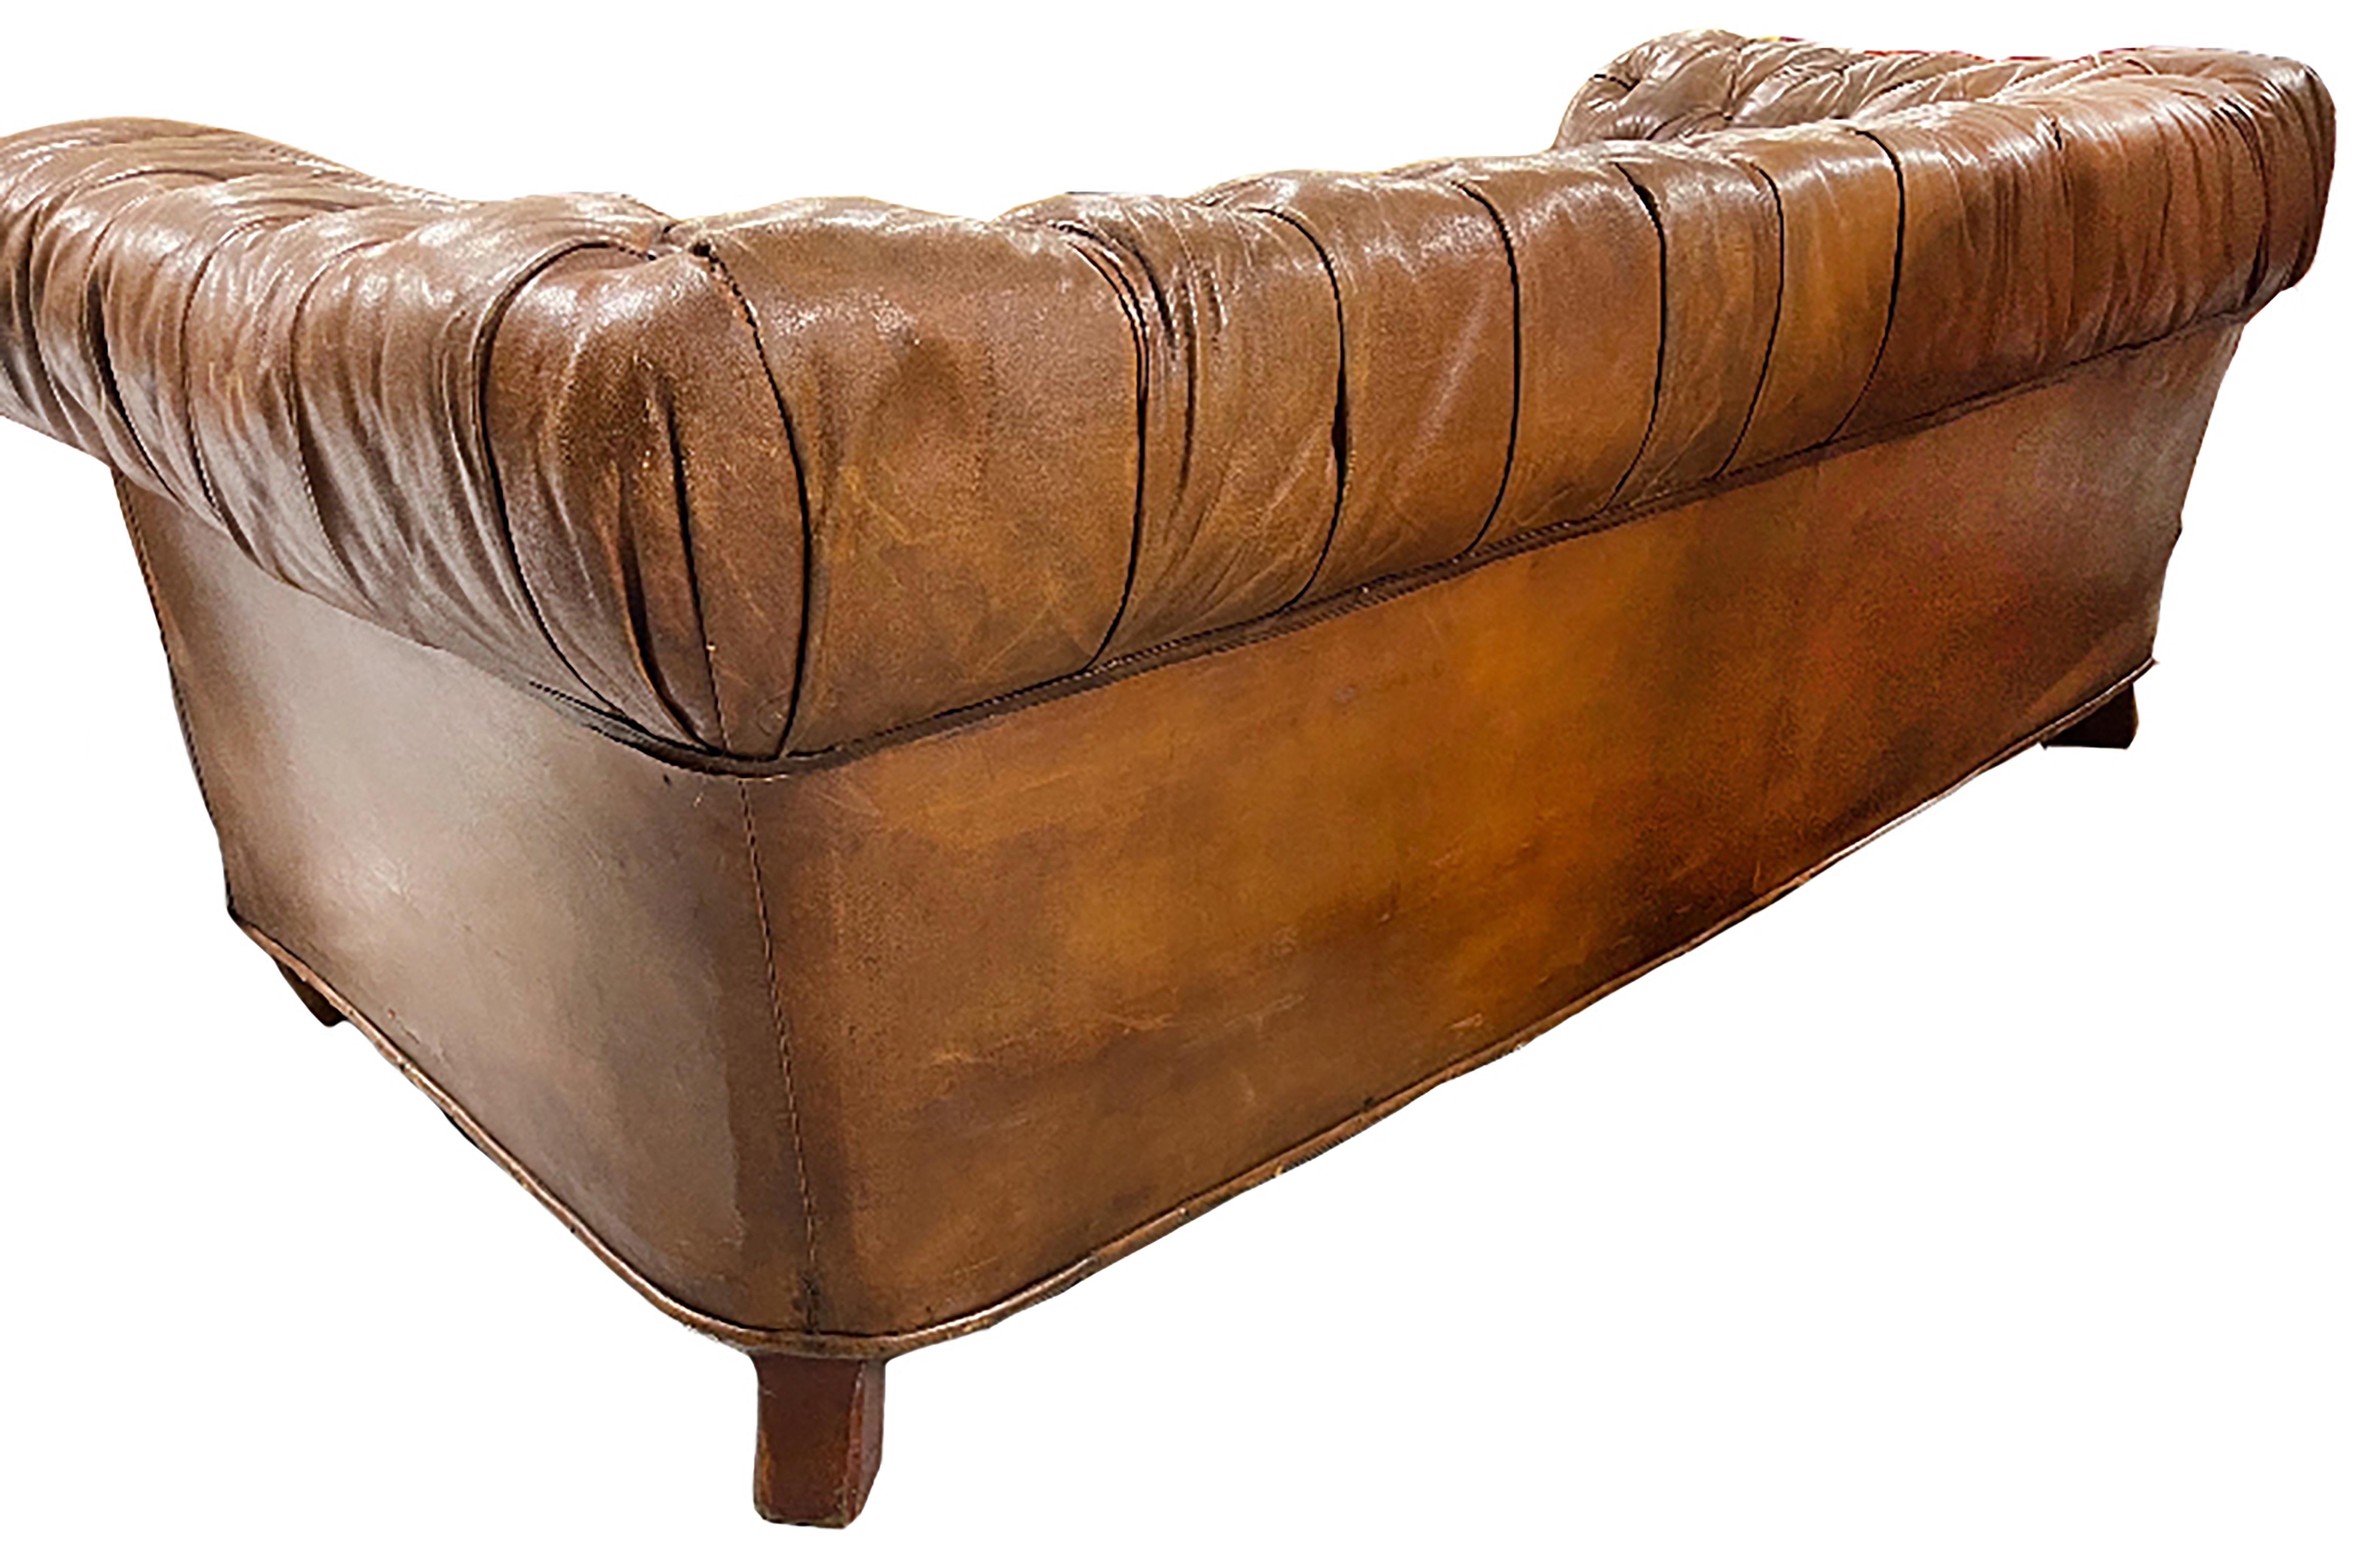 vintage tufted sofa